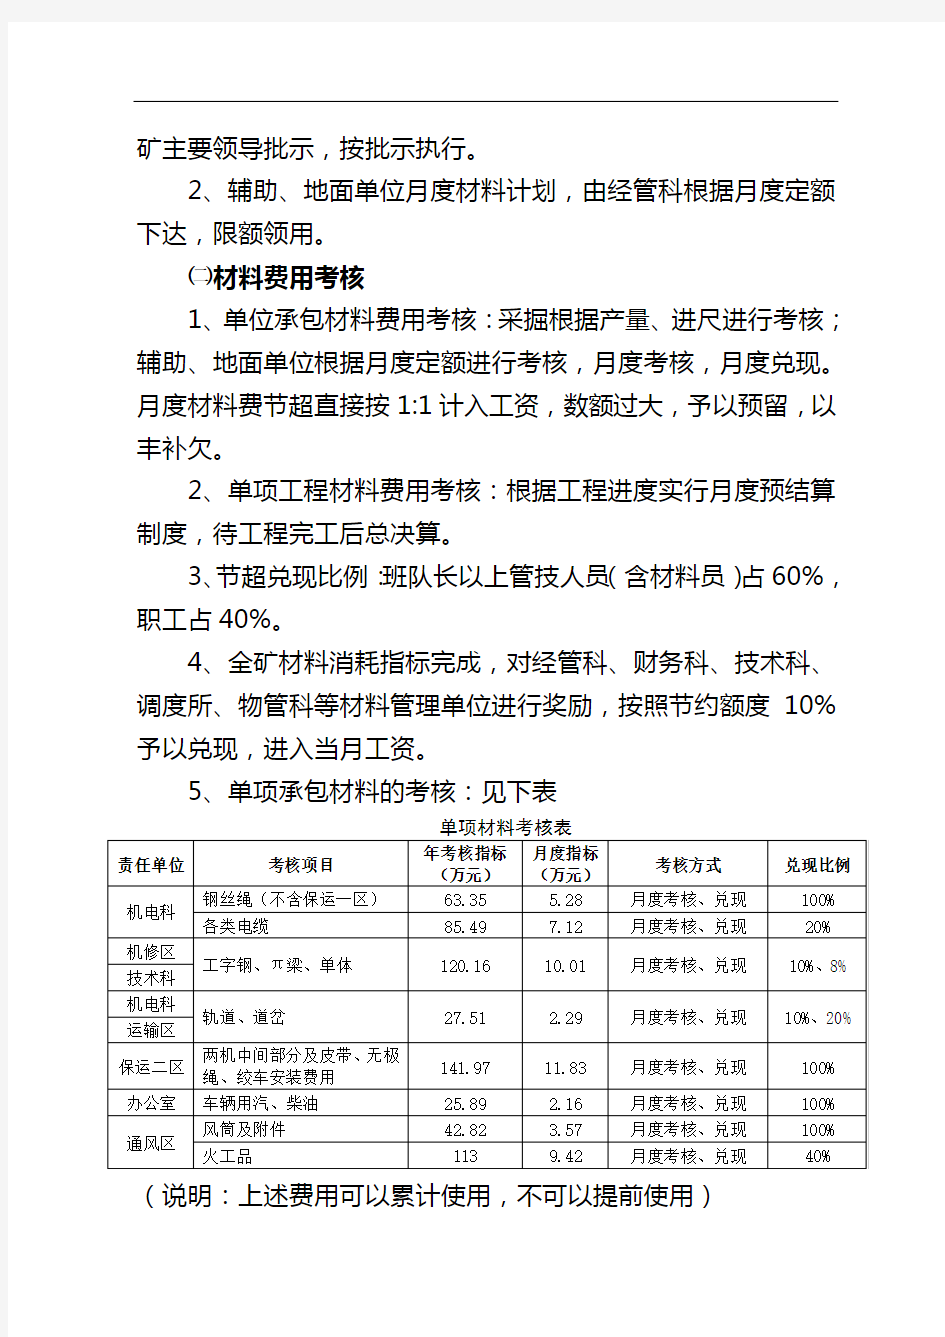 杨庄煤矿2015年材料考核管理办法